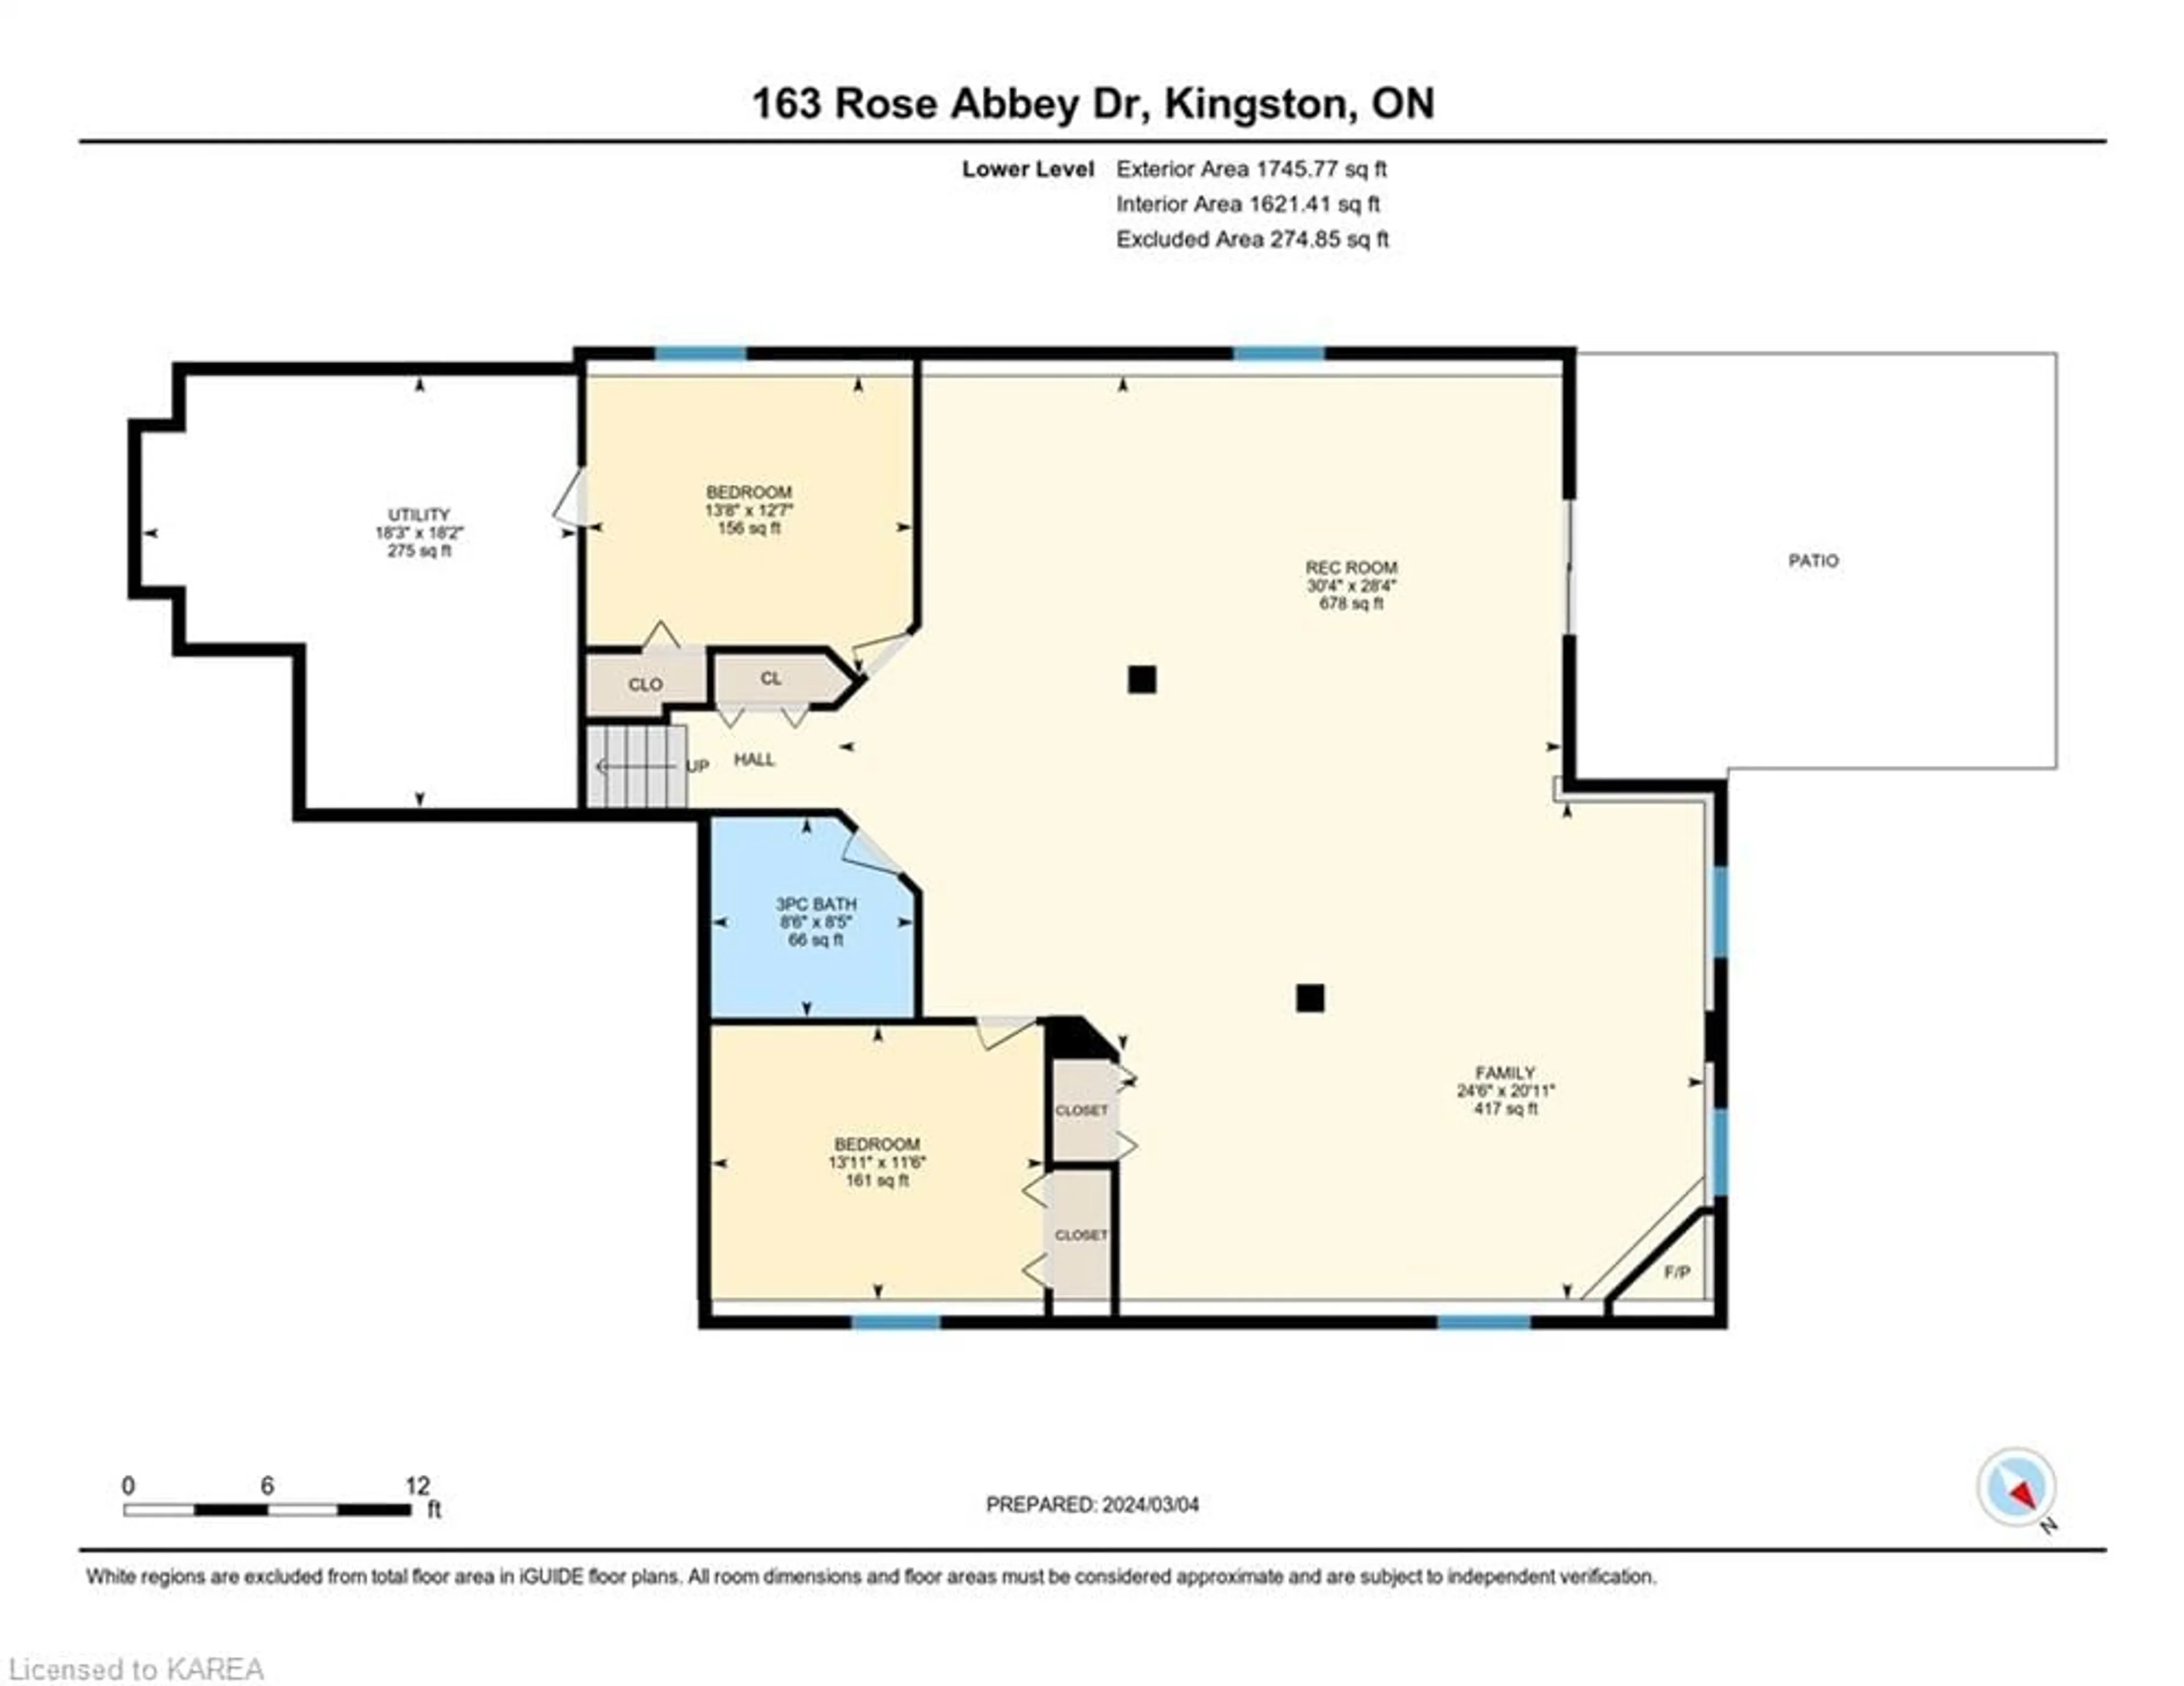 Floor plan for 163 Rose Abbey Dr, Kingston Ontario K7K 7L9